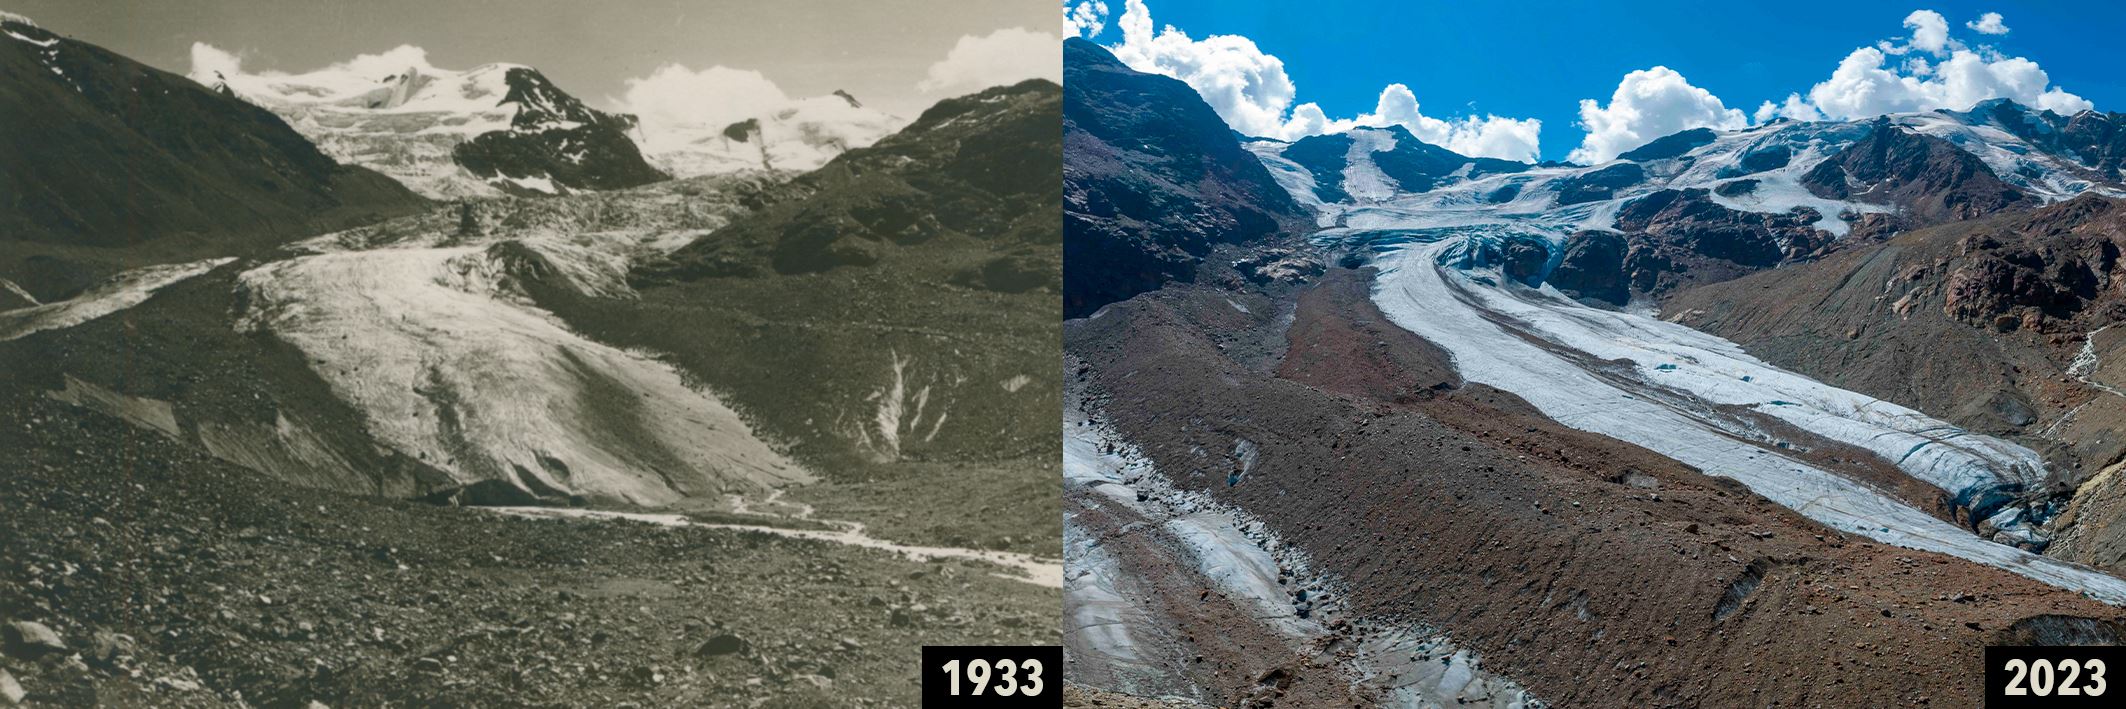 Immagini a confronto del ghiacciaio dei Forni, nel gruppo Ortles-Cevedale